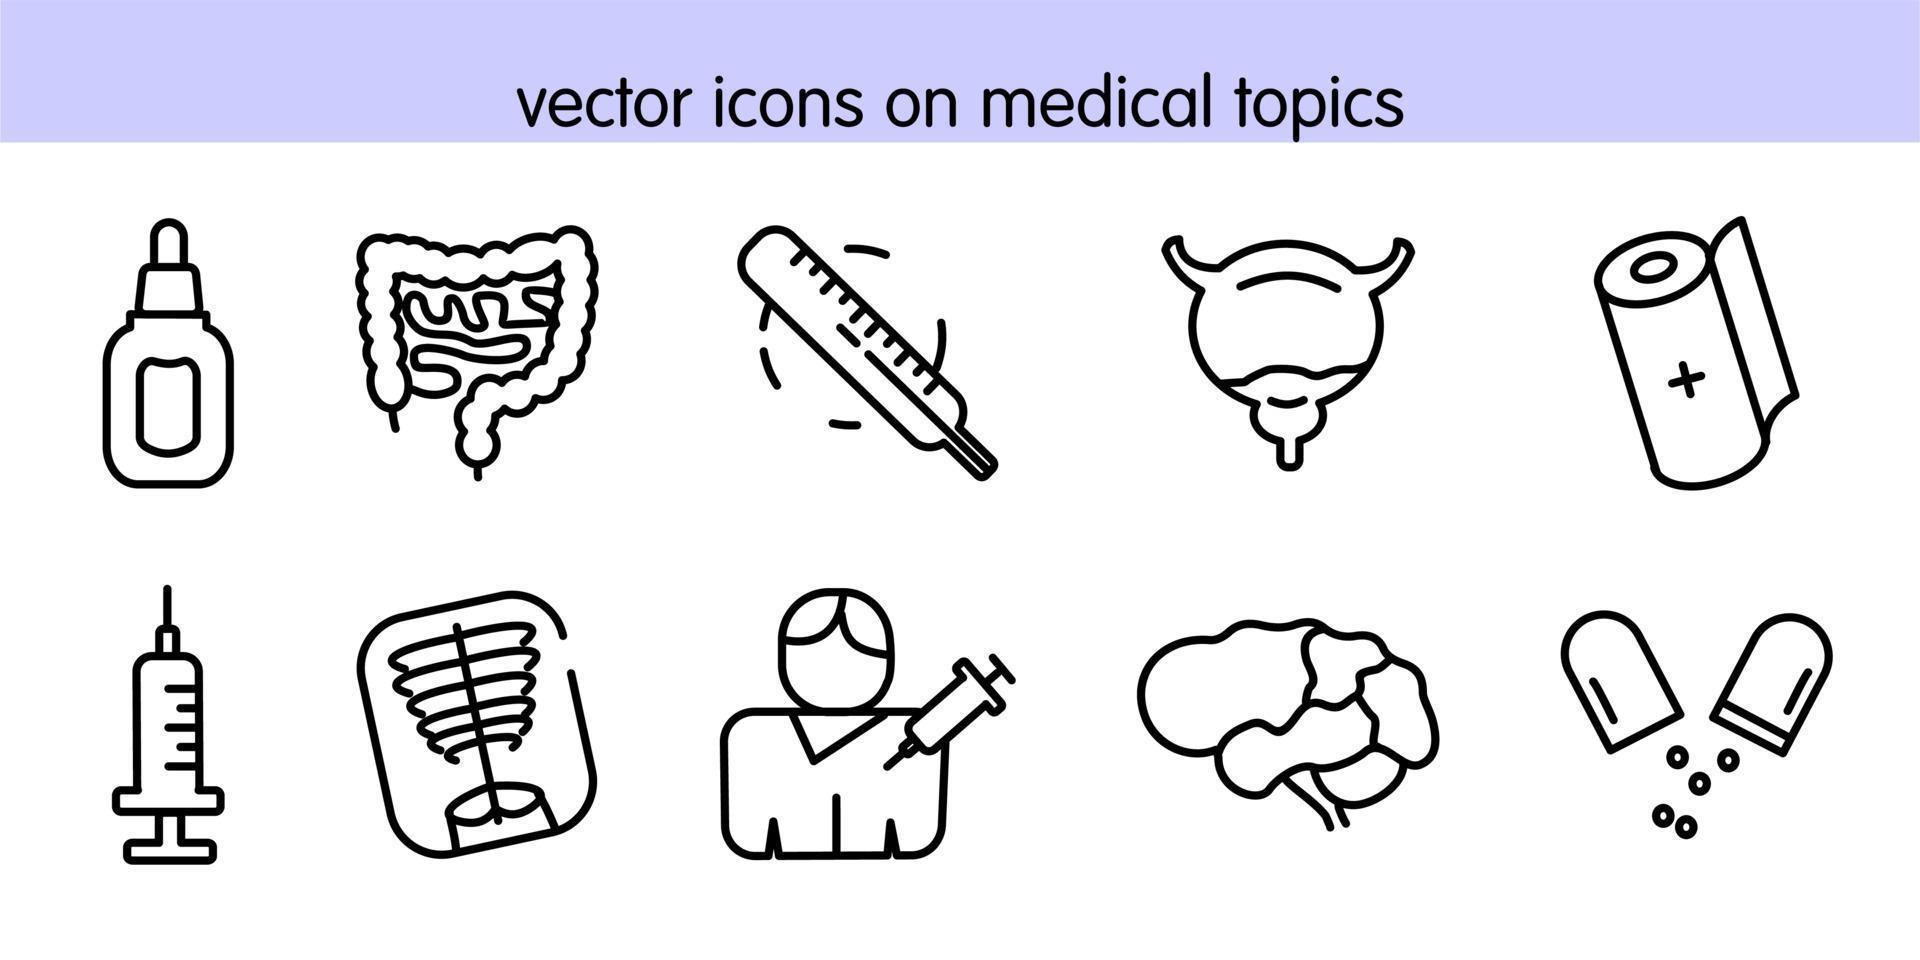 Vektorsymbole zu medizinischen Themen vektor